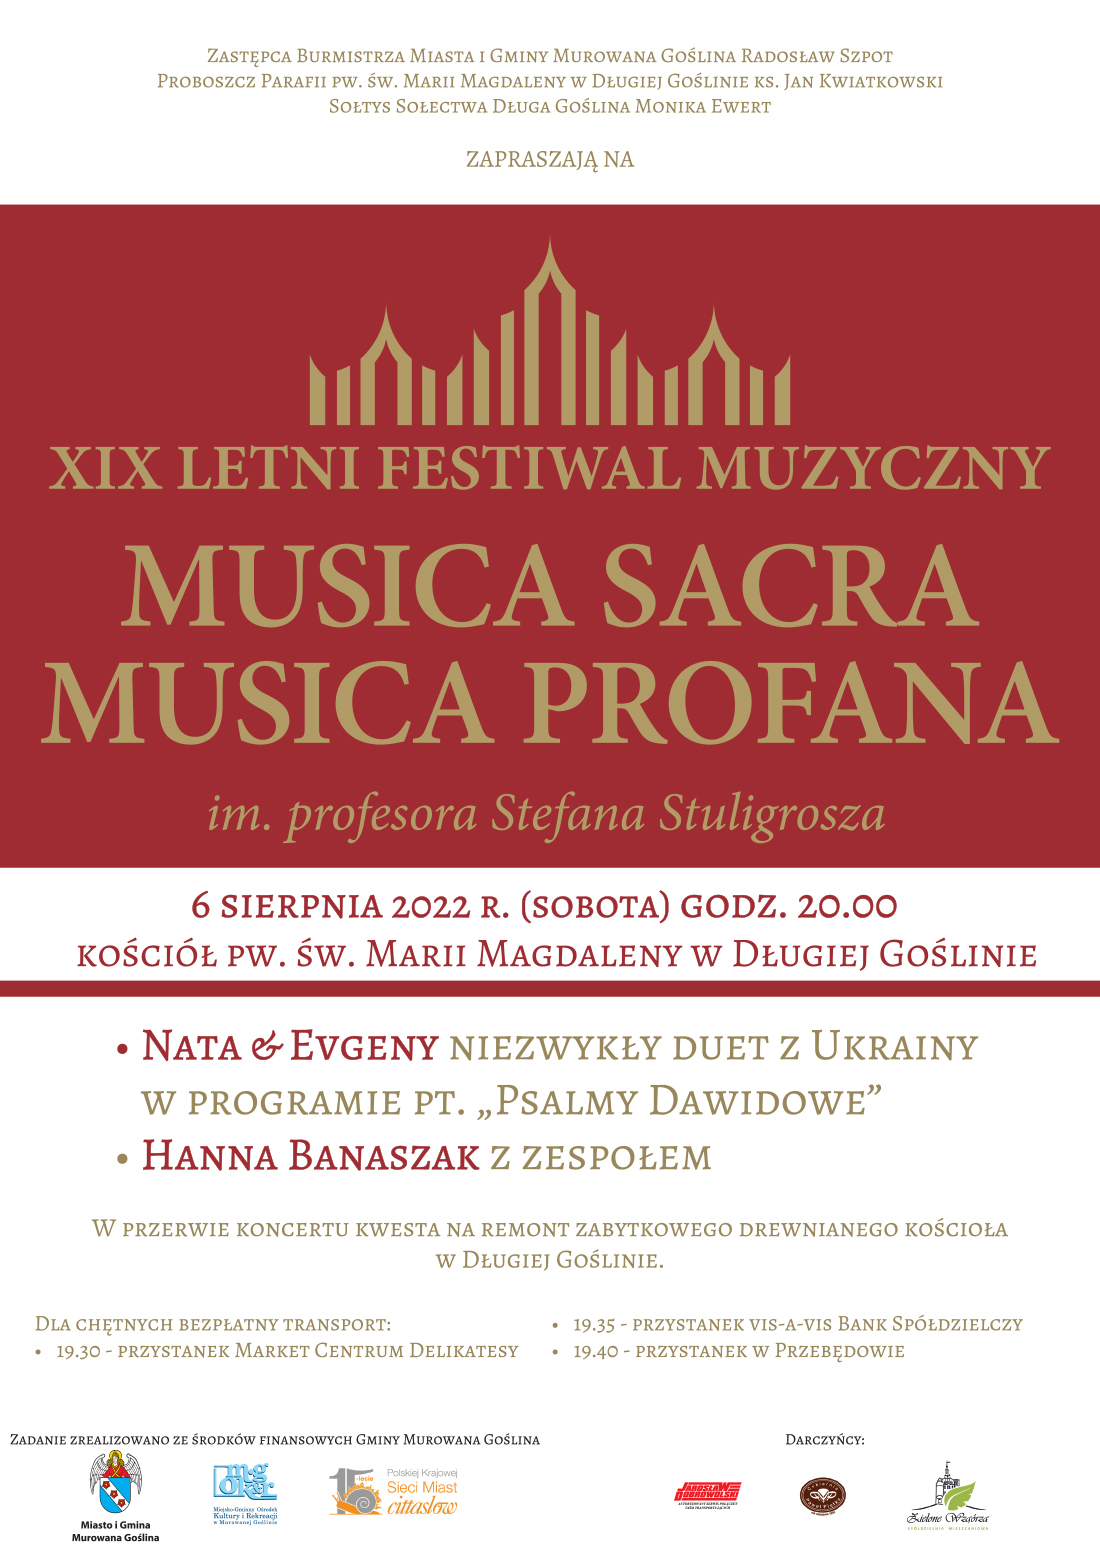 Koncert Musica Sacra Musica Profana w Długiej Goślinie 6 sieprnia godz.20.00, Psalmy Dawidowe w wykonaniu duetu z Ukrainy oraz koncert Hanny Banaszak z zespołem